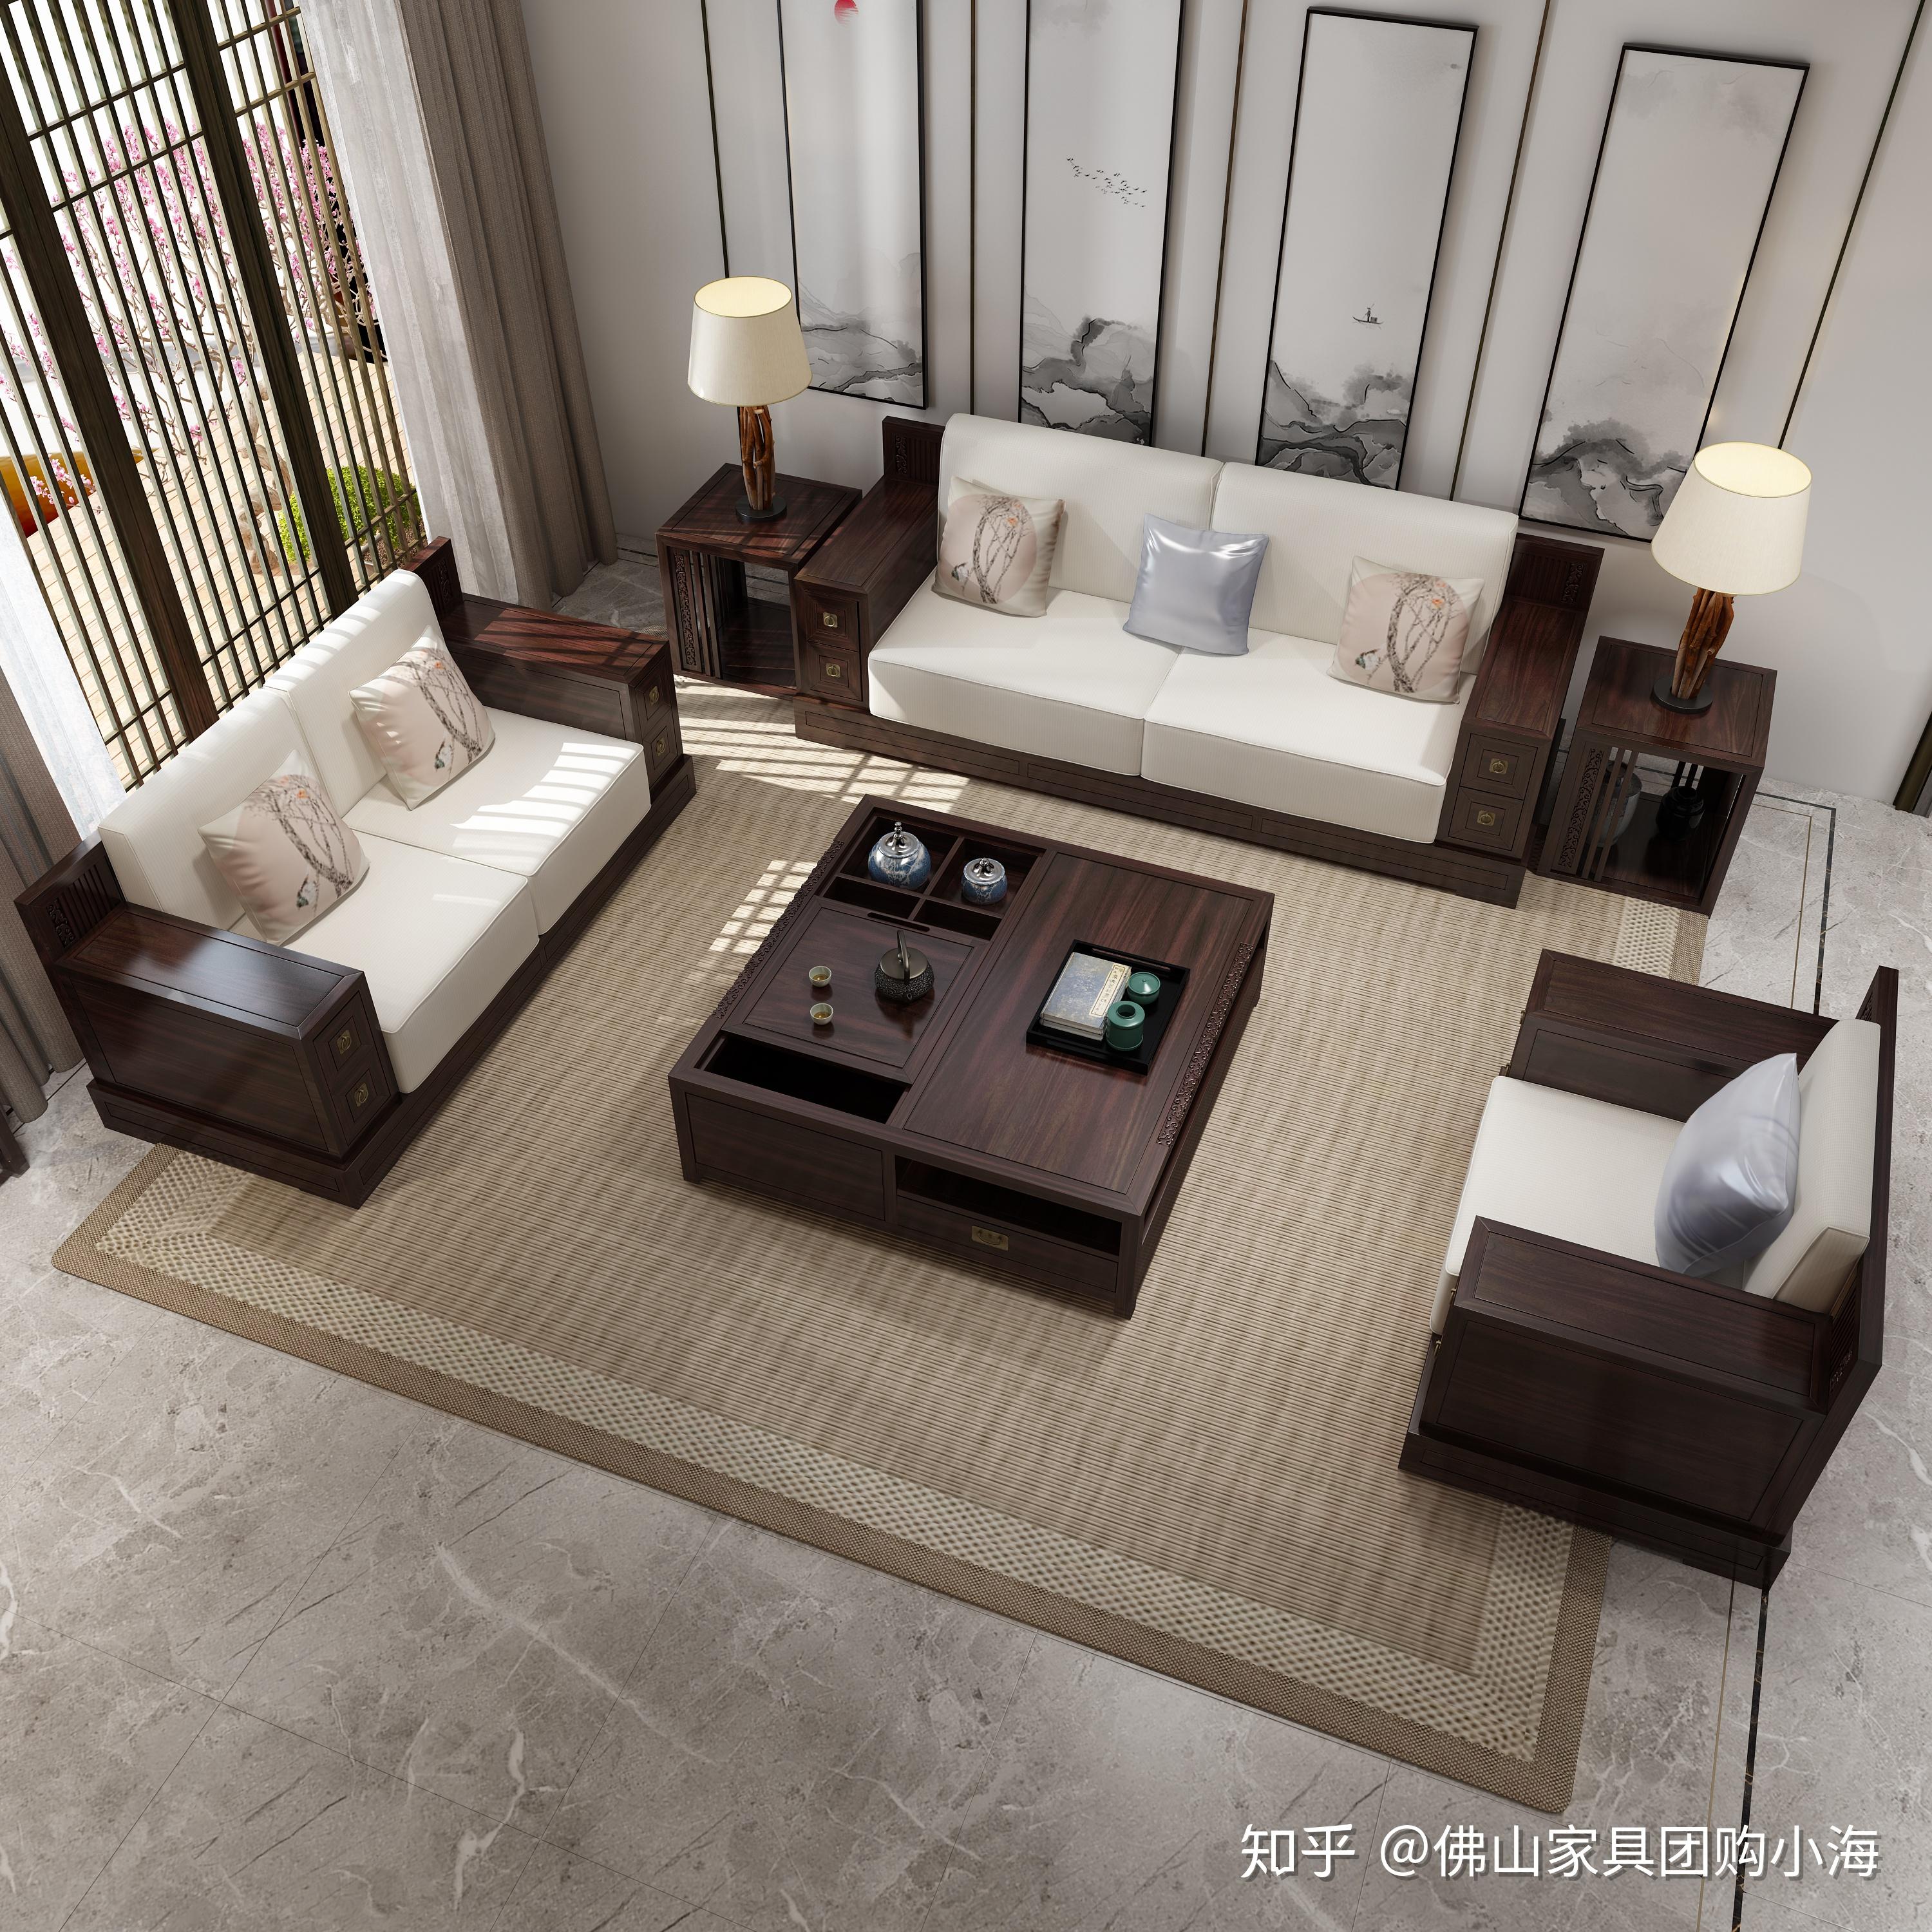 佛山买家具攻略之新中式沙发如何搭配?看这里一目了然!